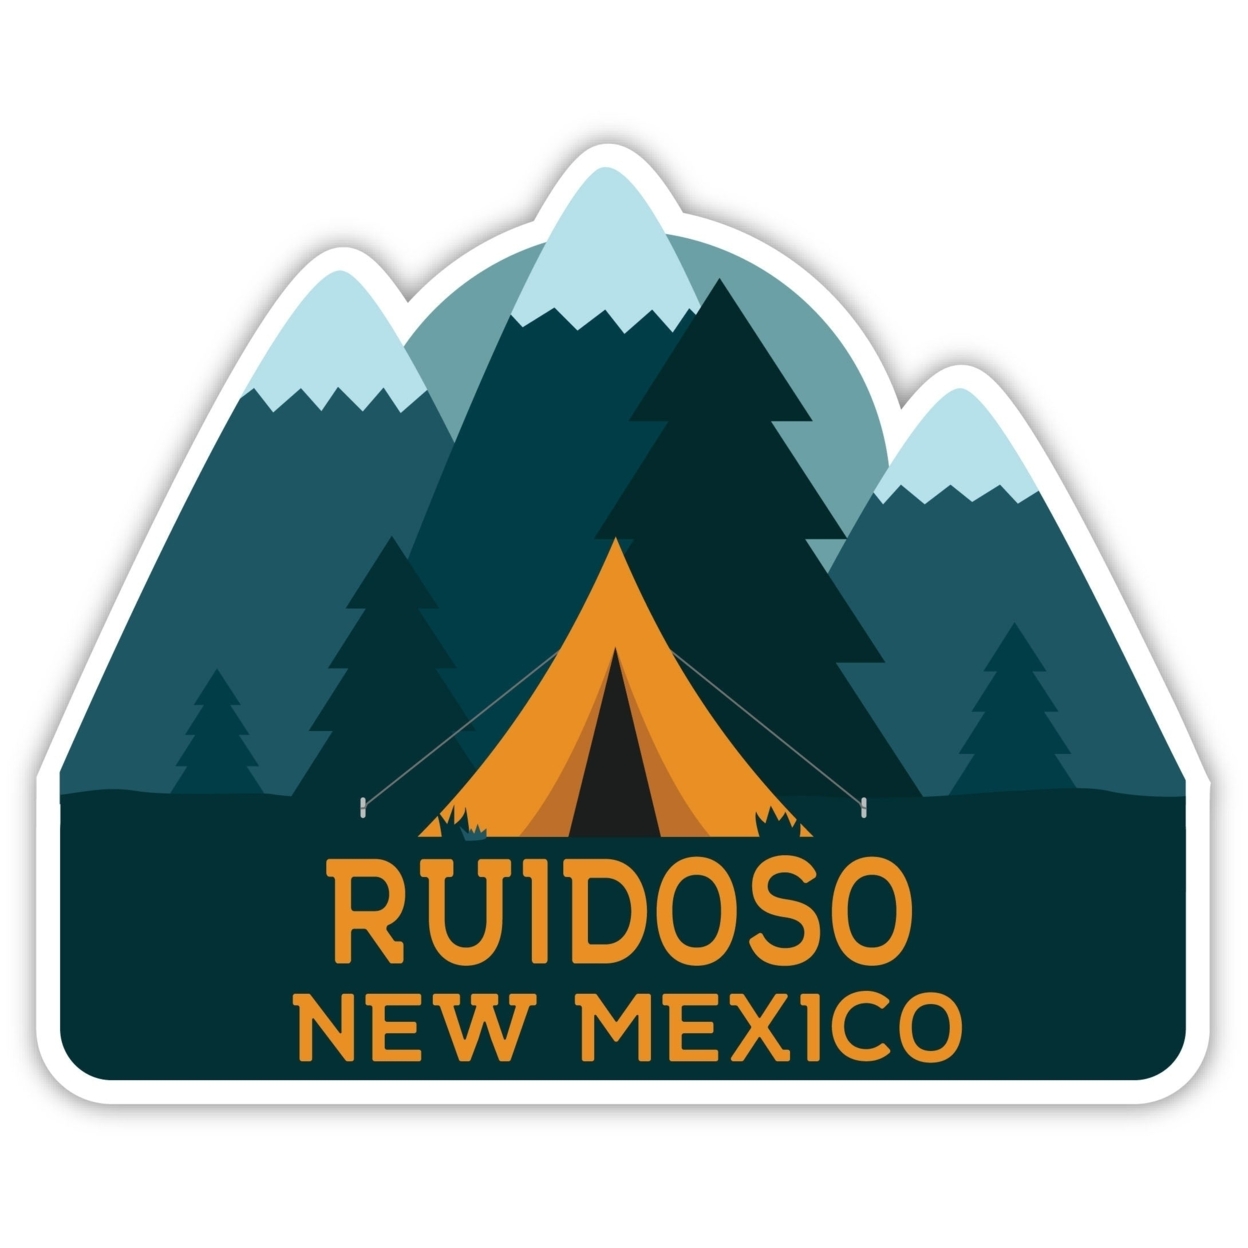 Ruidoso New Mexico Souvenir Decorative Stickers (Choose Theme And Size) - Single Unit, 2-Inch, Tent